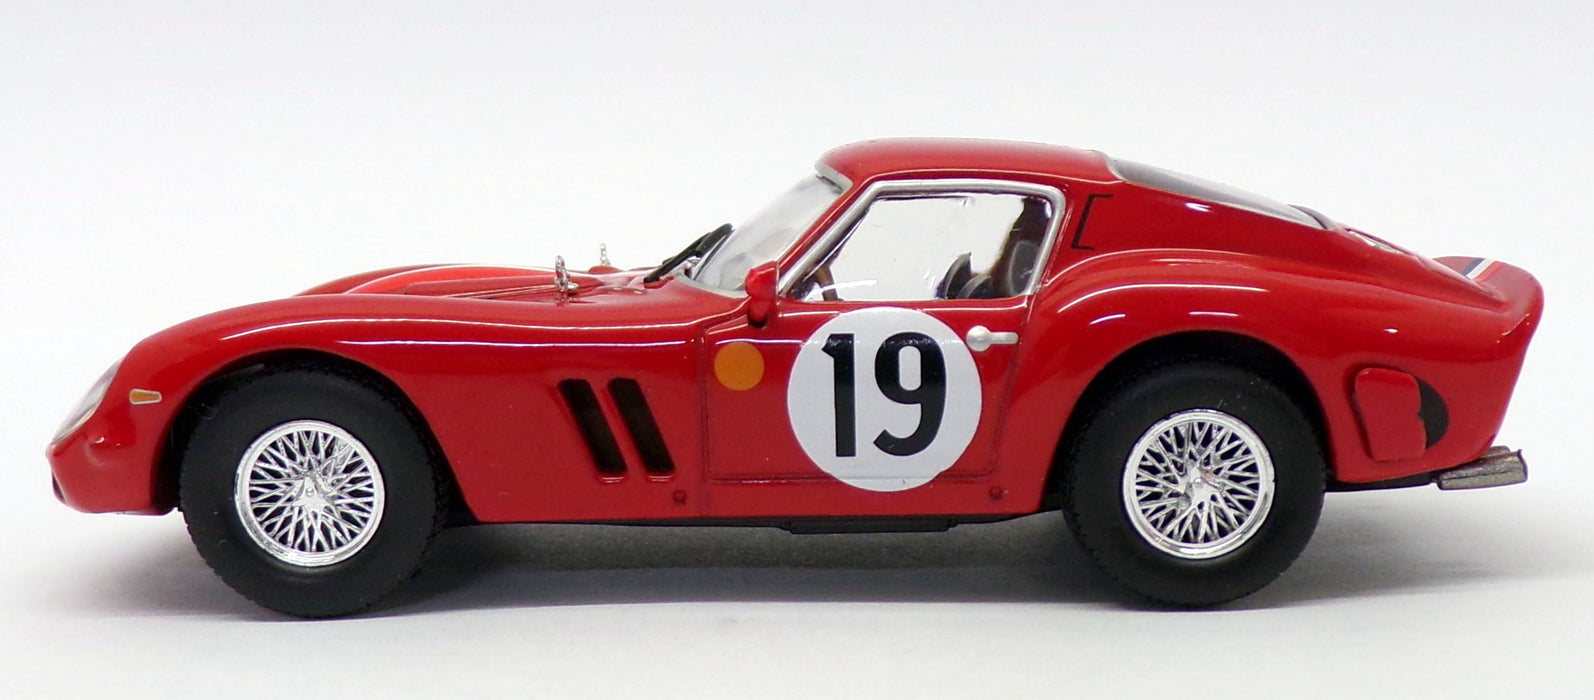 Ixo Altaya 1/43 Scale XA241119 - Ferrari 250 GTO - #19 Le Mans 1962